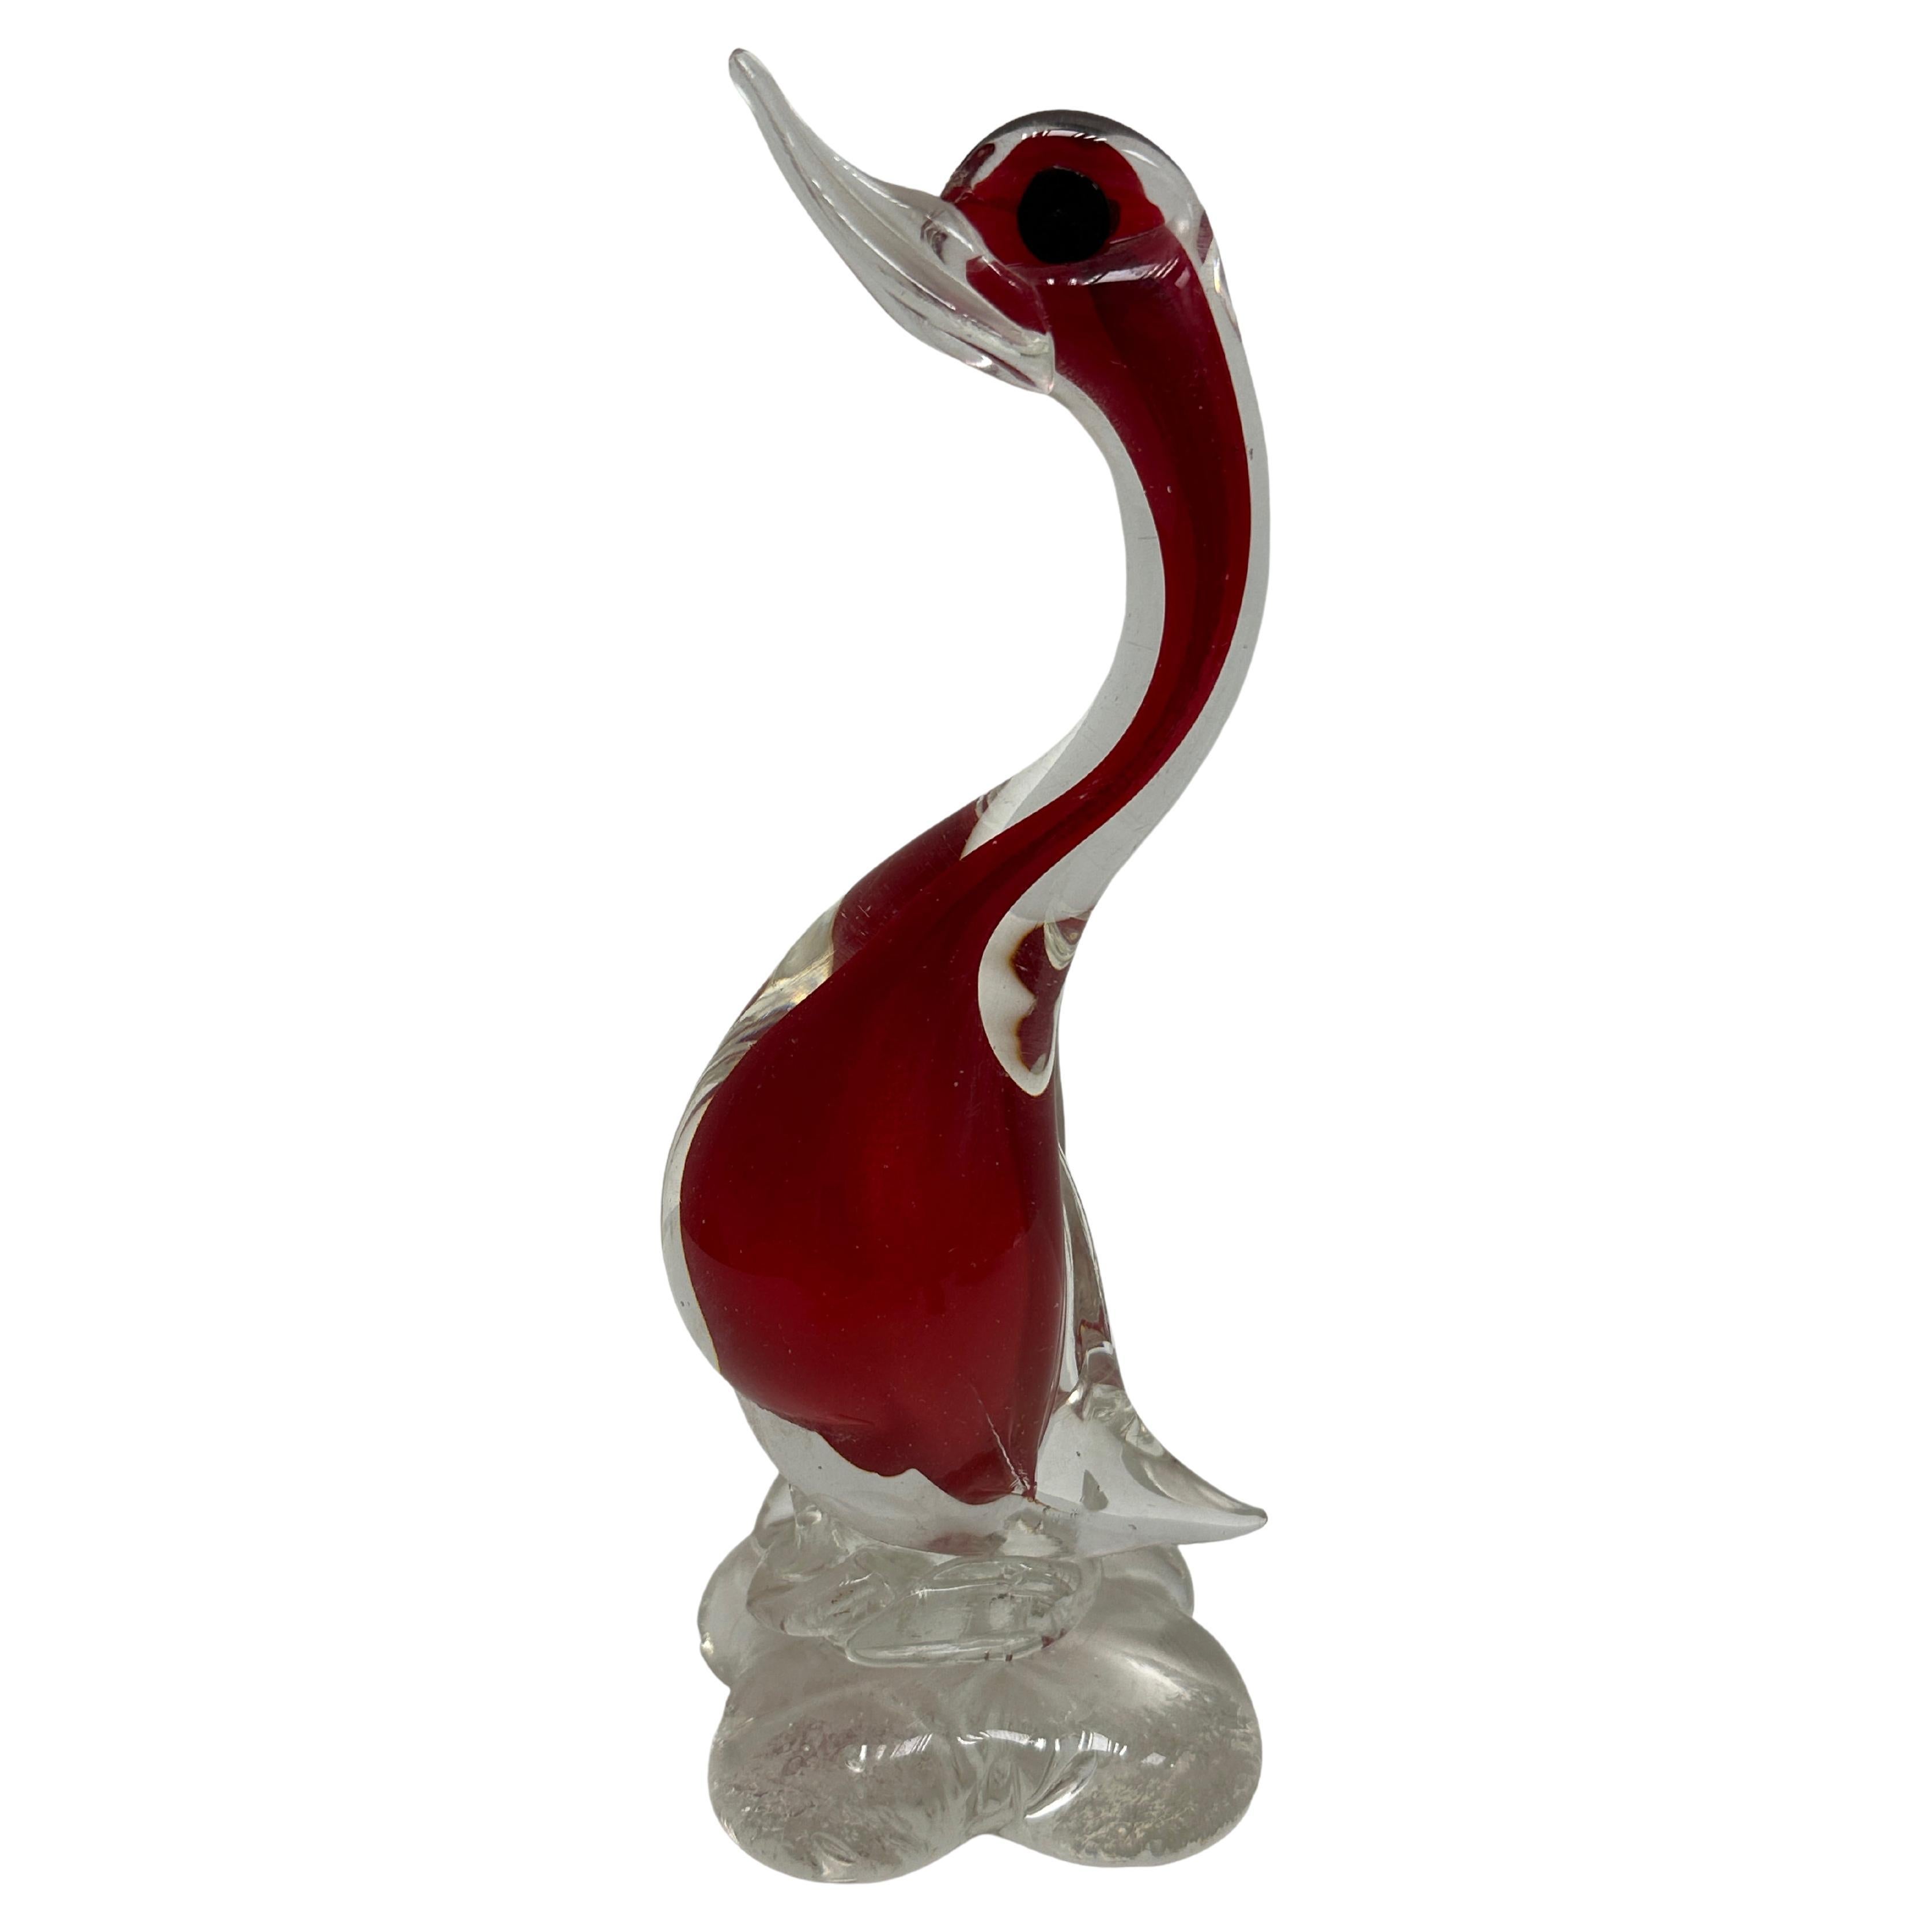 Cette superbe sculpture de canard en verre d'art italien Murano a été achetée lors d'une vente de succession à Rovereto, en Italie. Il a été fabriqué dans le style traditionnel de Murano, une technique vieille de plusieurs siècles qui requiert une